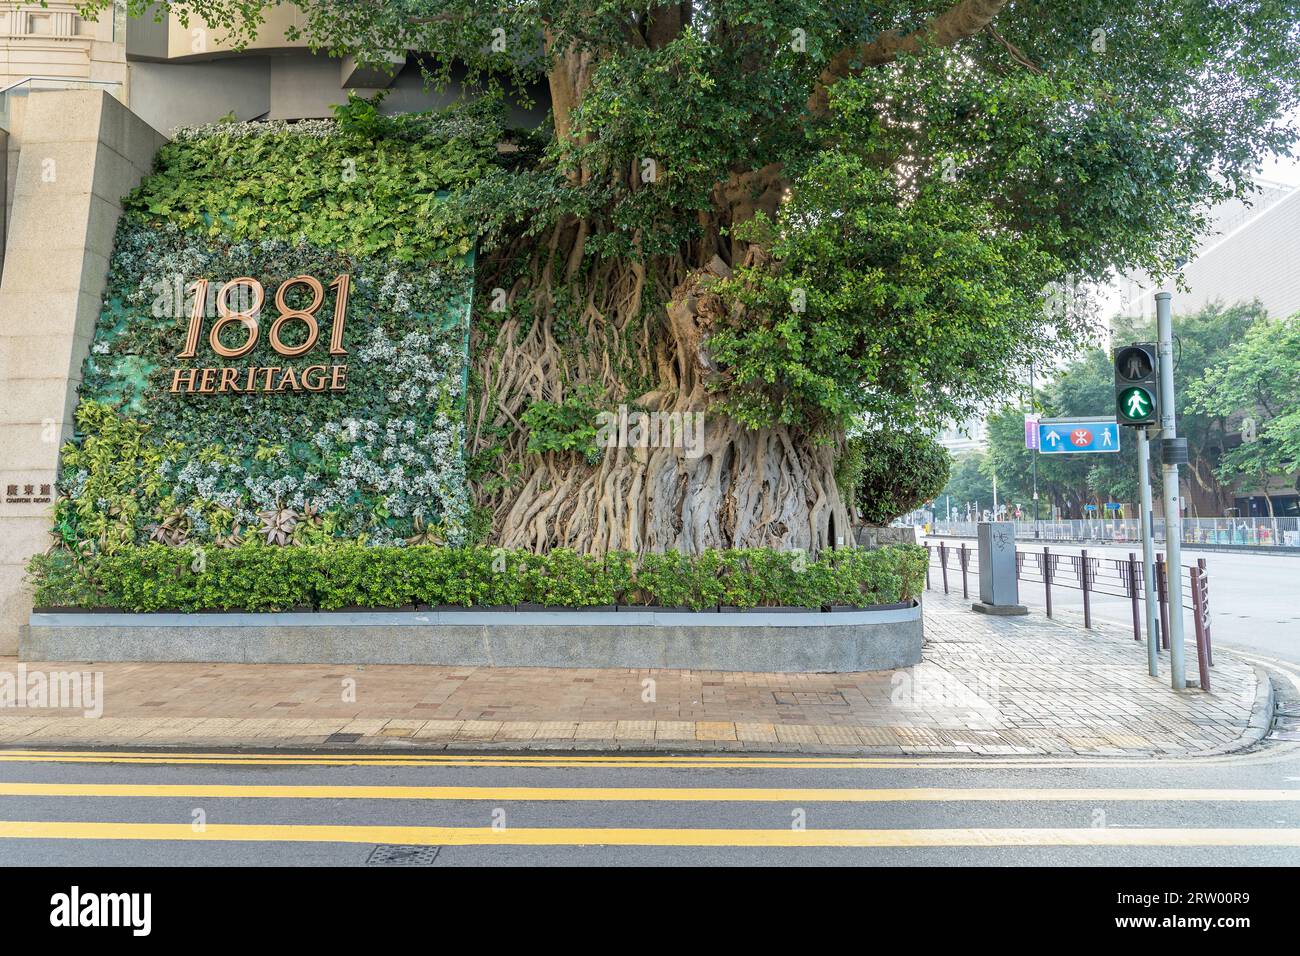 Schild und Baum an der Ecke der Straße Werbung 1881 Heritage Luxury Shopping plaza an einem sonnigen Tag in Tsim Sha Tsui. Hongkong Stockfoto